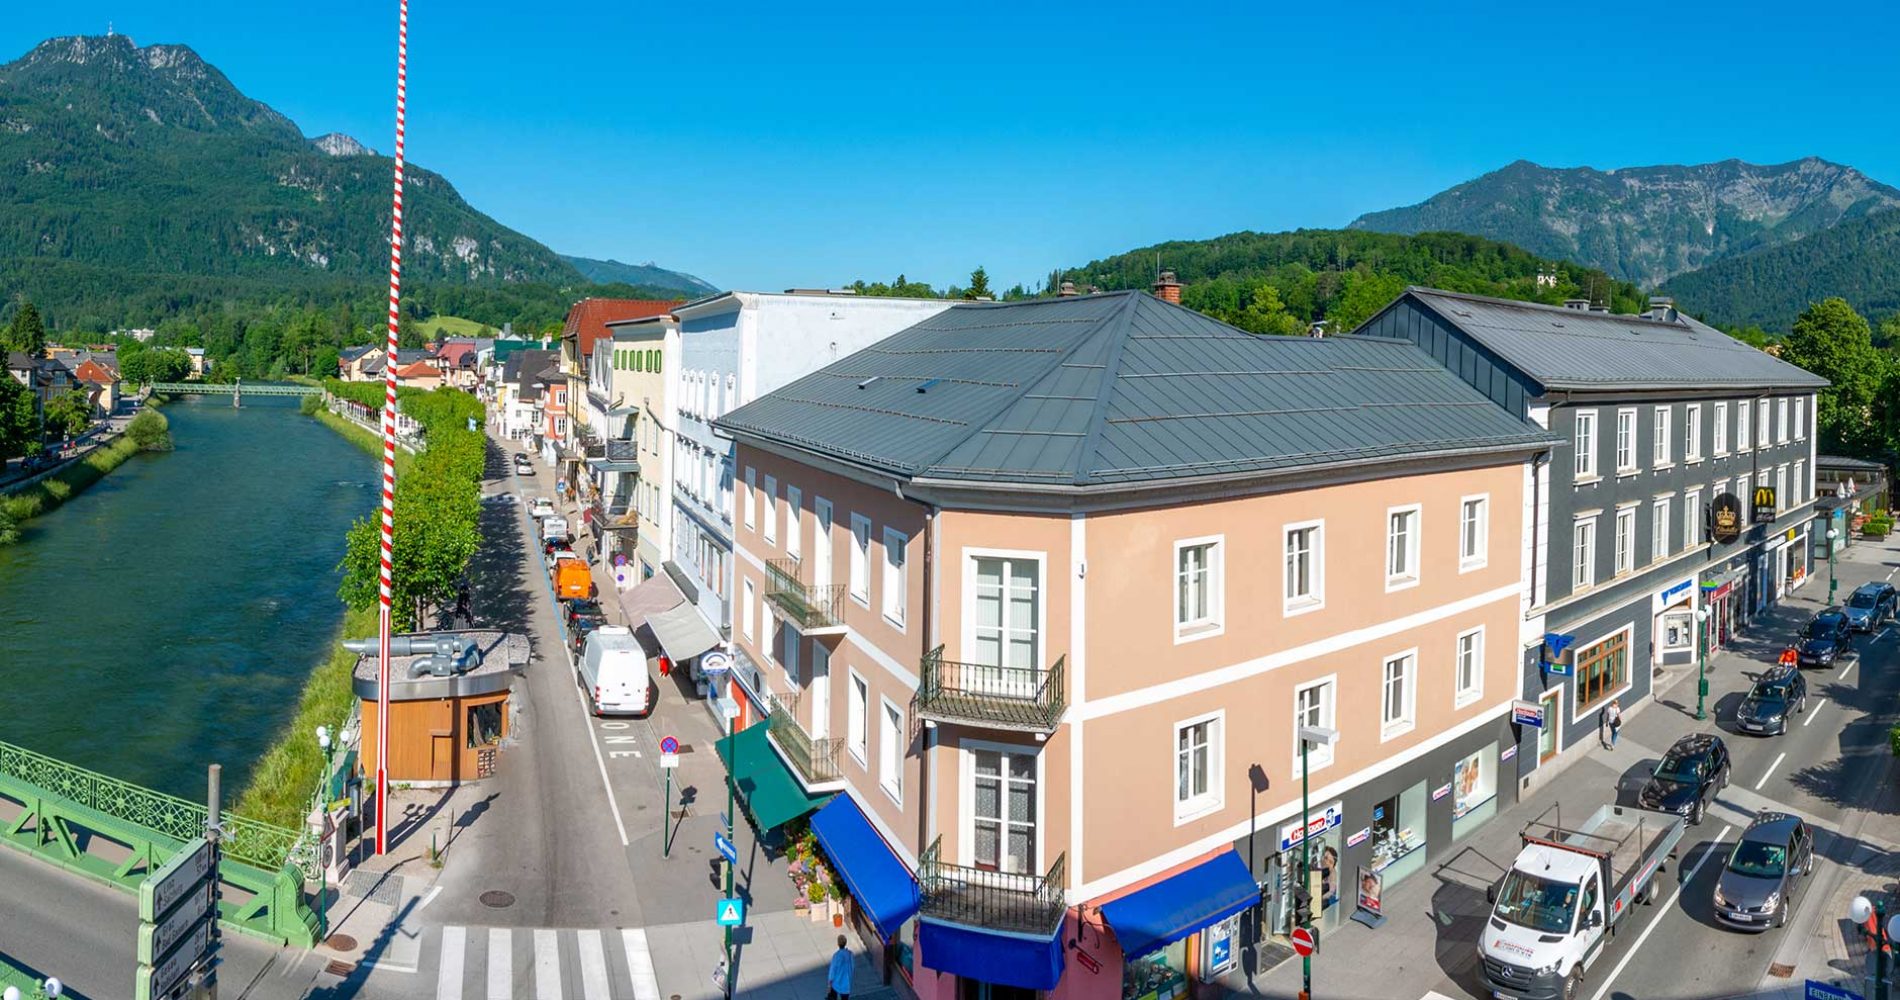 Immobilien in Bad Ischl | DAXNER Immobilien